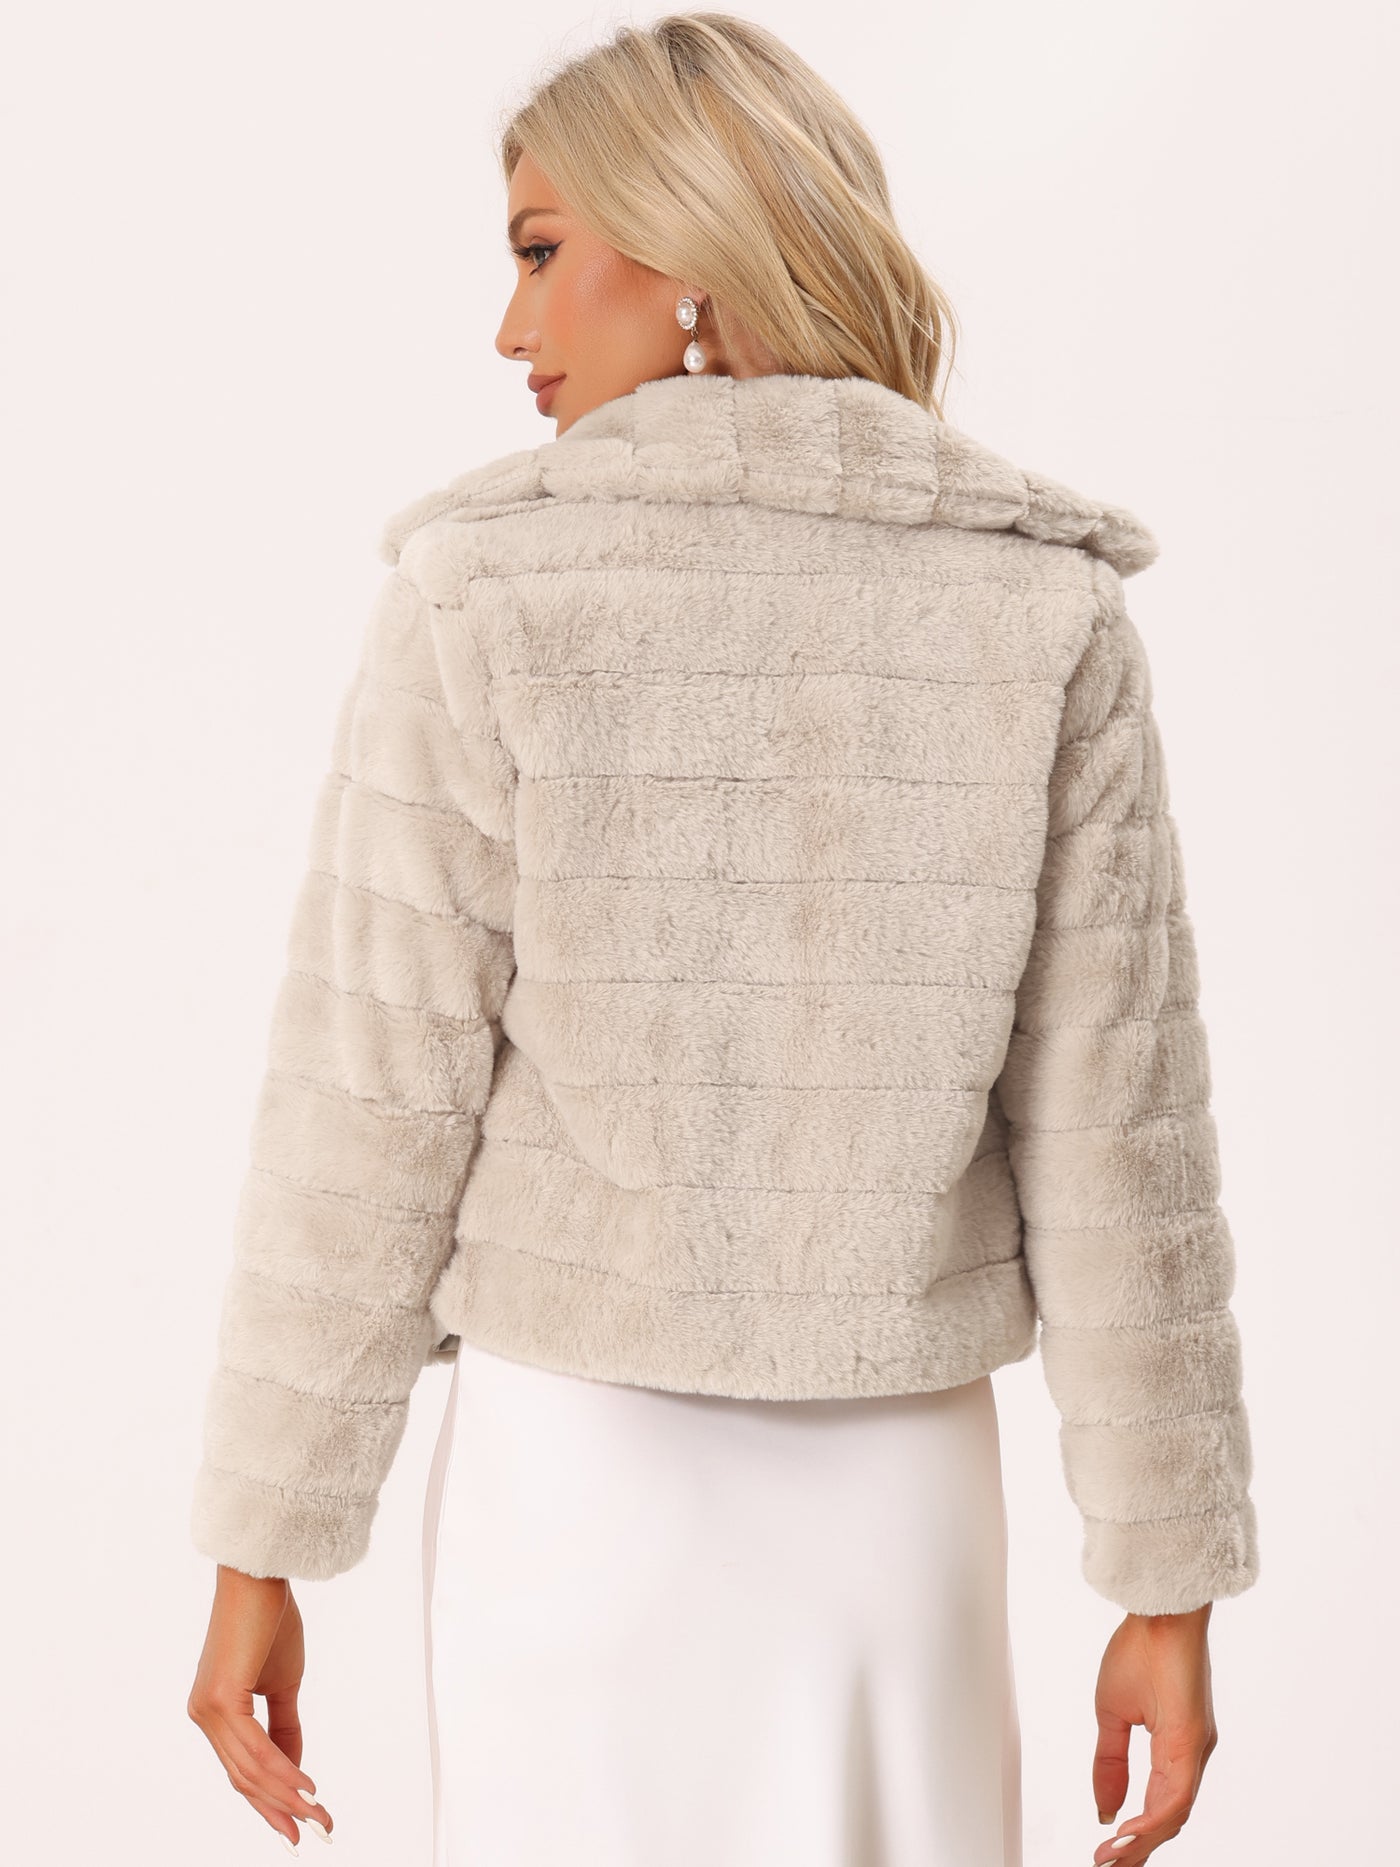 Allegra K Faux Fur Fluffy Coat Collar Warm Winter Outwear Cropped Jacket